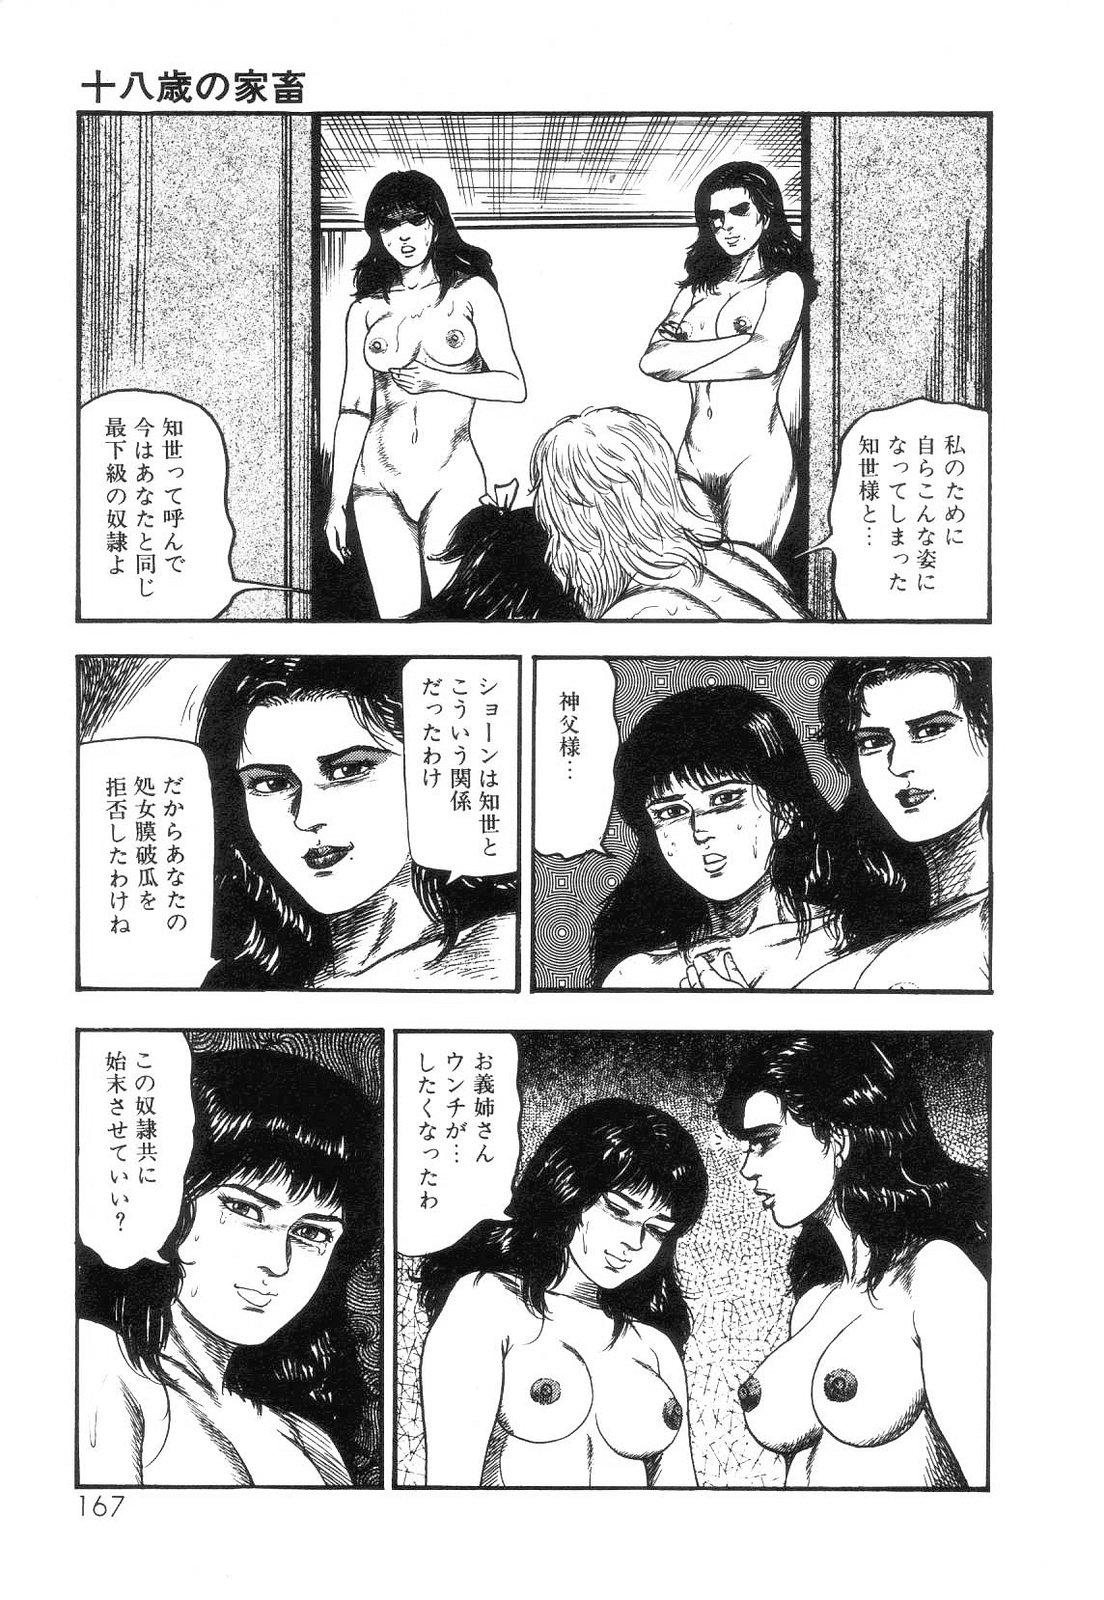 Shiro no Mokushiroku Vol. 4 - Bichiku Karen no Shou 168